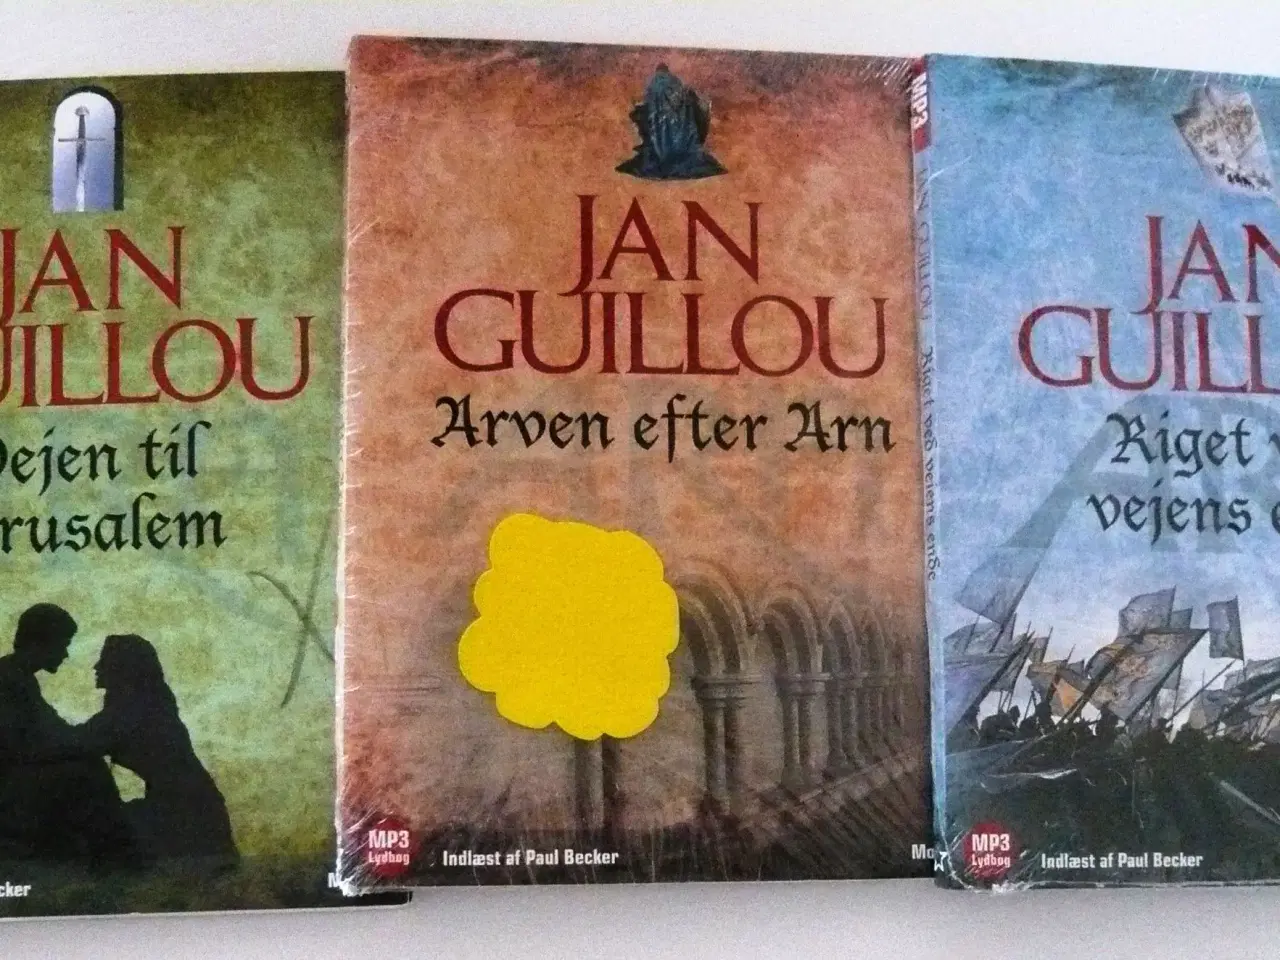 Billede 1 - 3 lydbøger fra seriern om Korstogsiden af Jan Guil